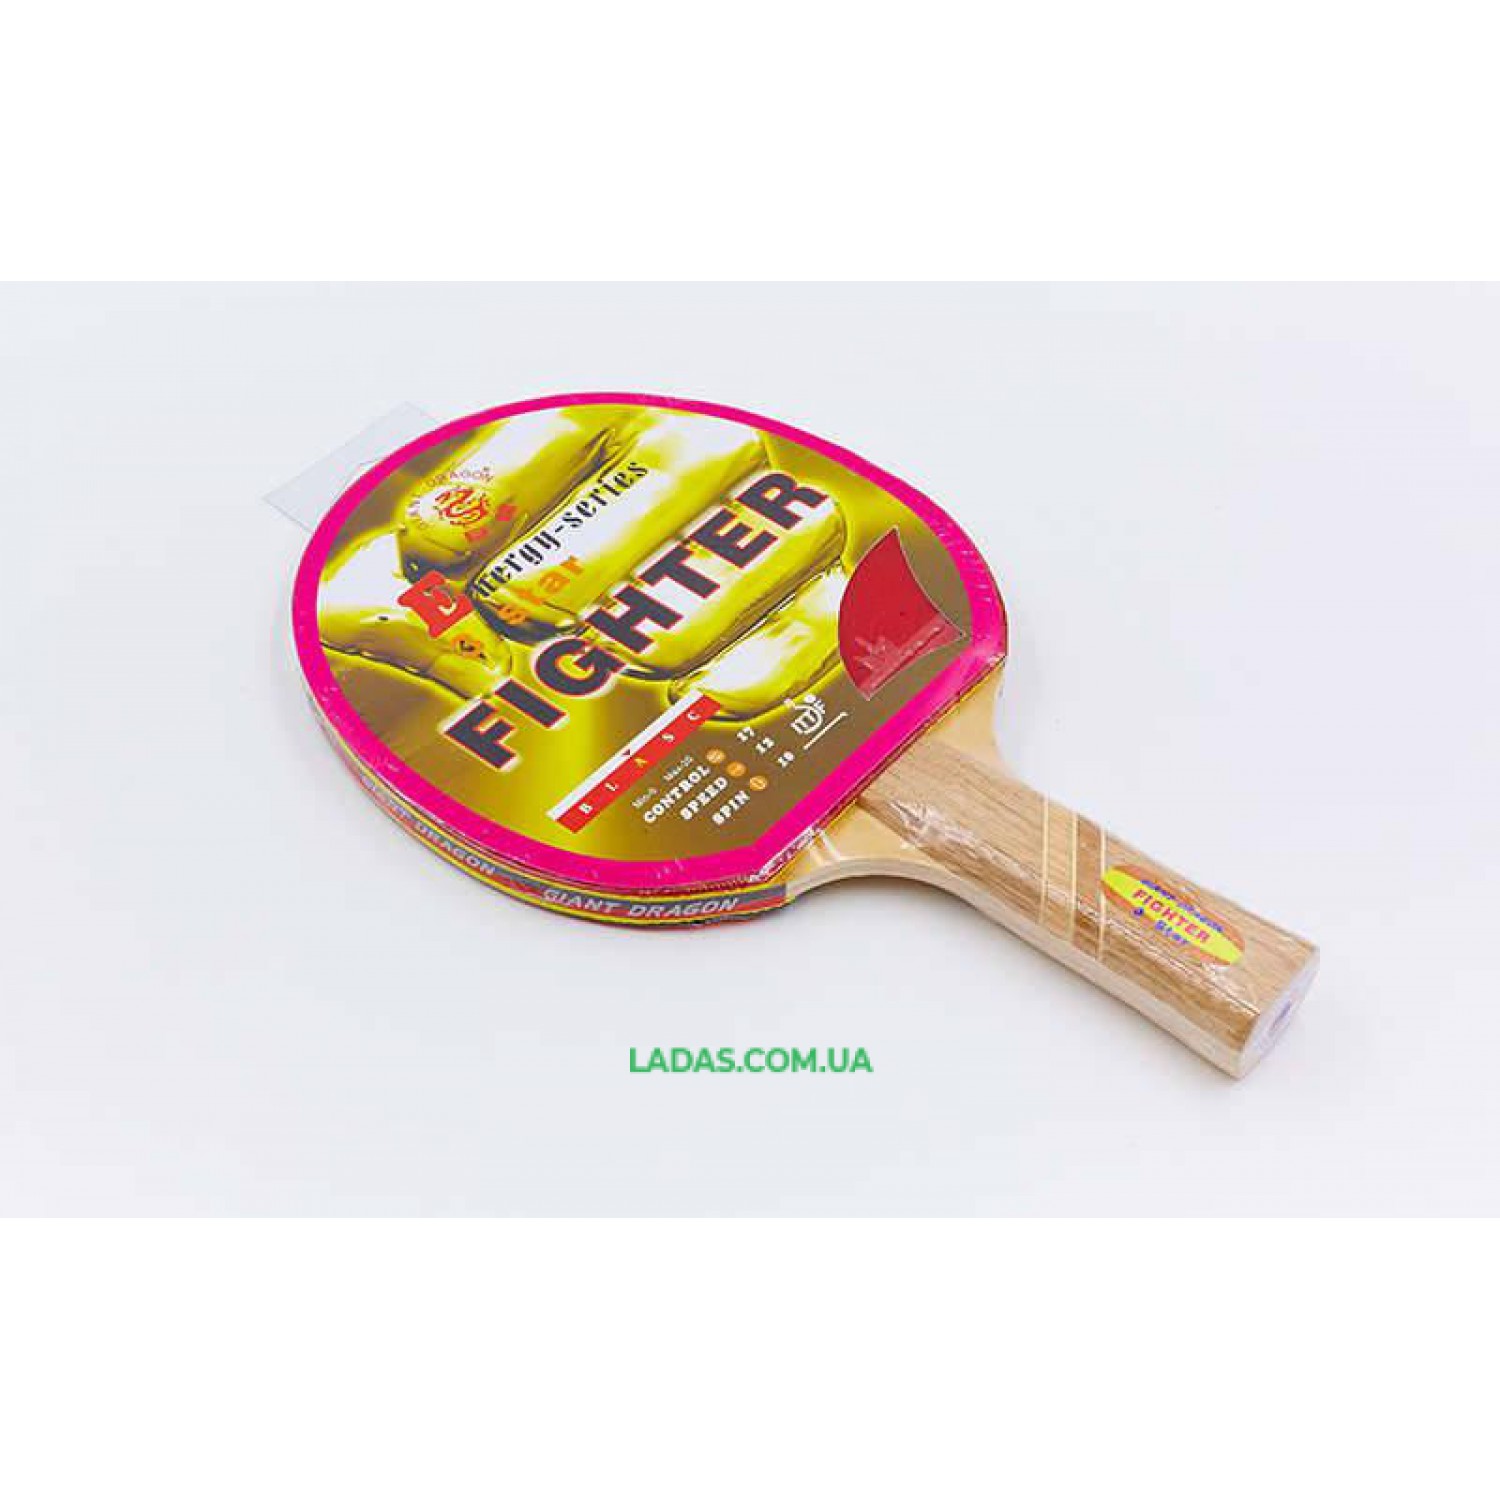 Ракетка для настольного тенниса 1 штука GIANT DRAGON FIGHTER 3* (древесина, резина)